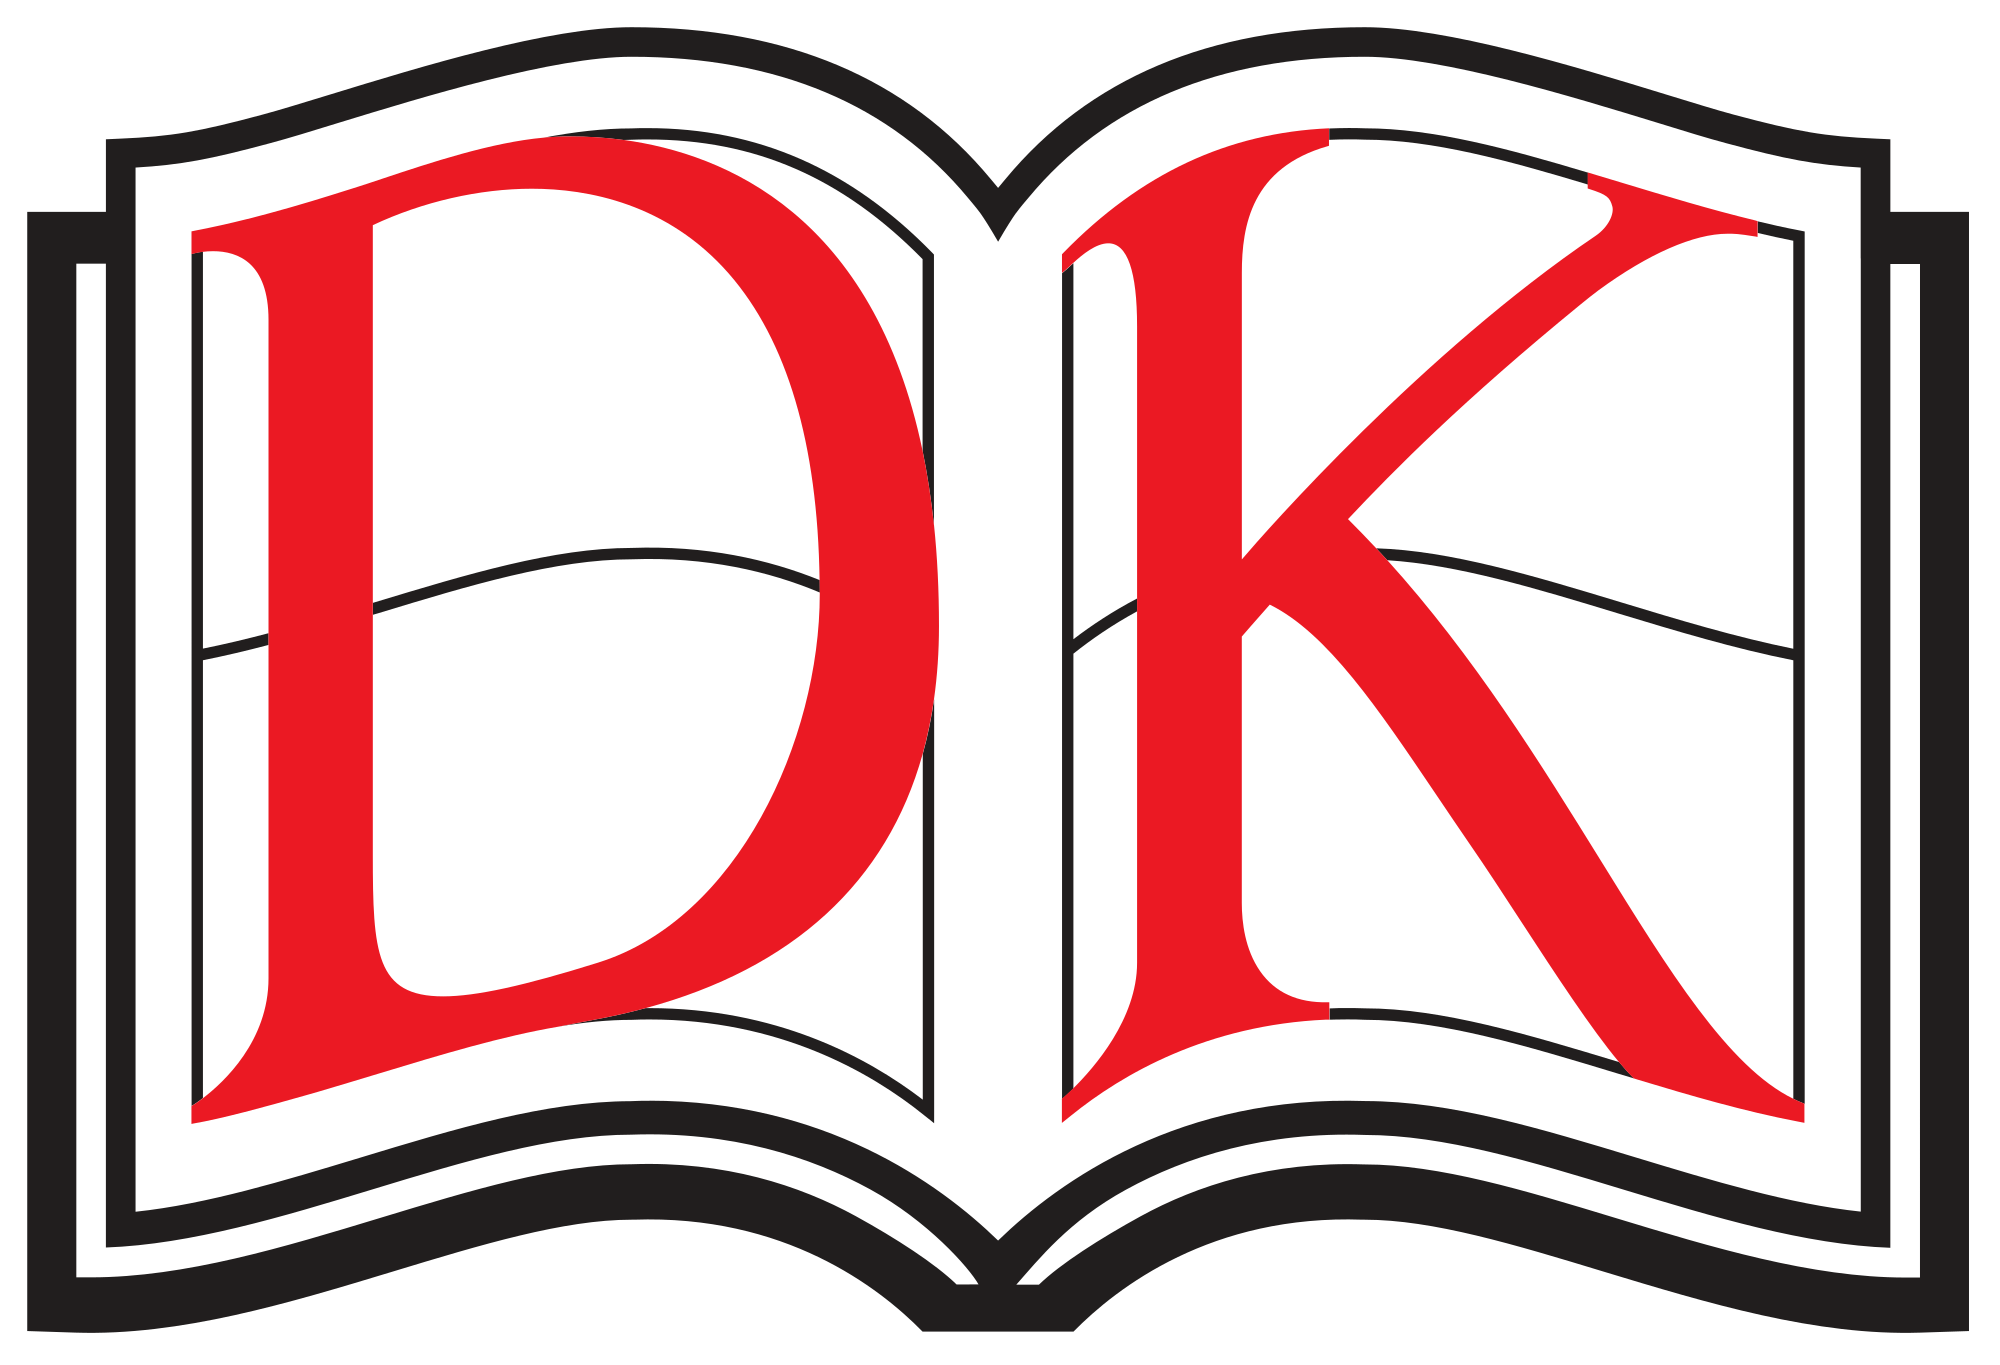 DK_logo_2014.svg